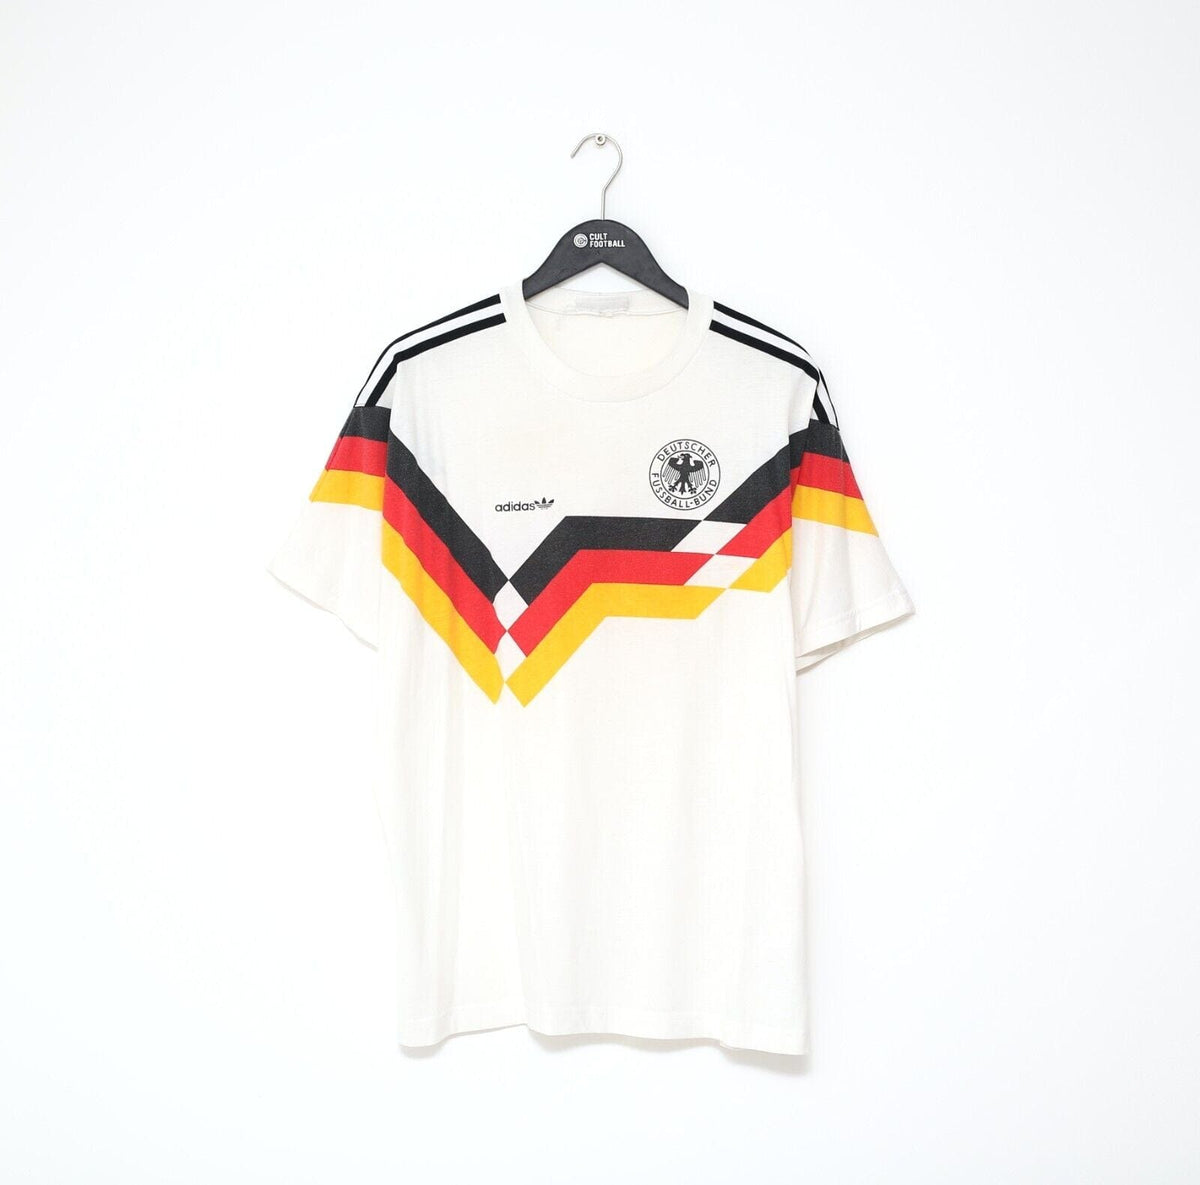 Ambiguo Rancio carbón Vintage Germany football shirts - Football Shirt Collective